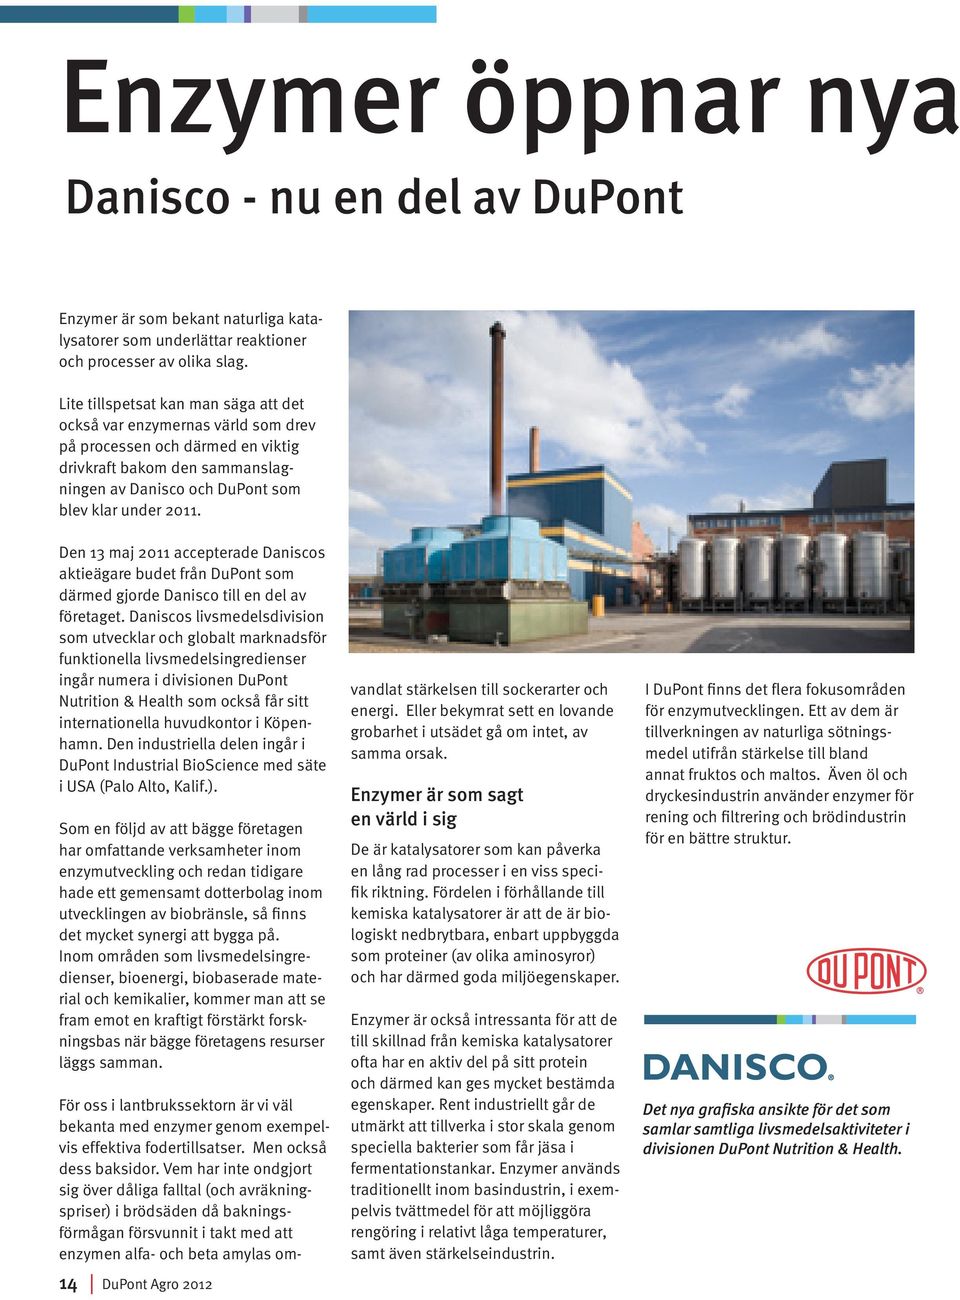 Den 13 maj 2011 accepterade Daniscos aktieägare budet från DuPont som därmed gjorde Danisco till en del av företaget.